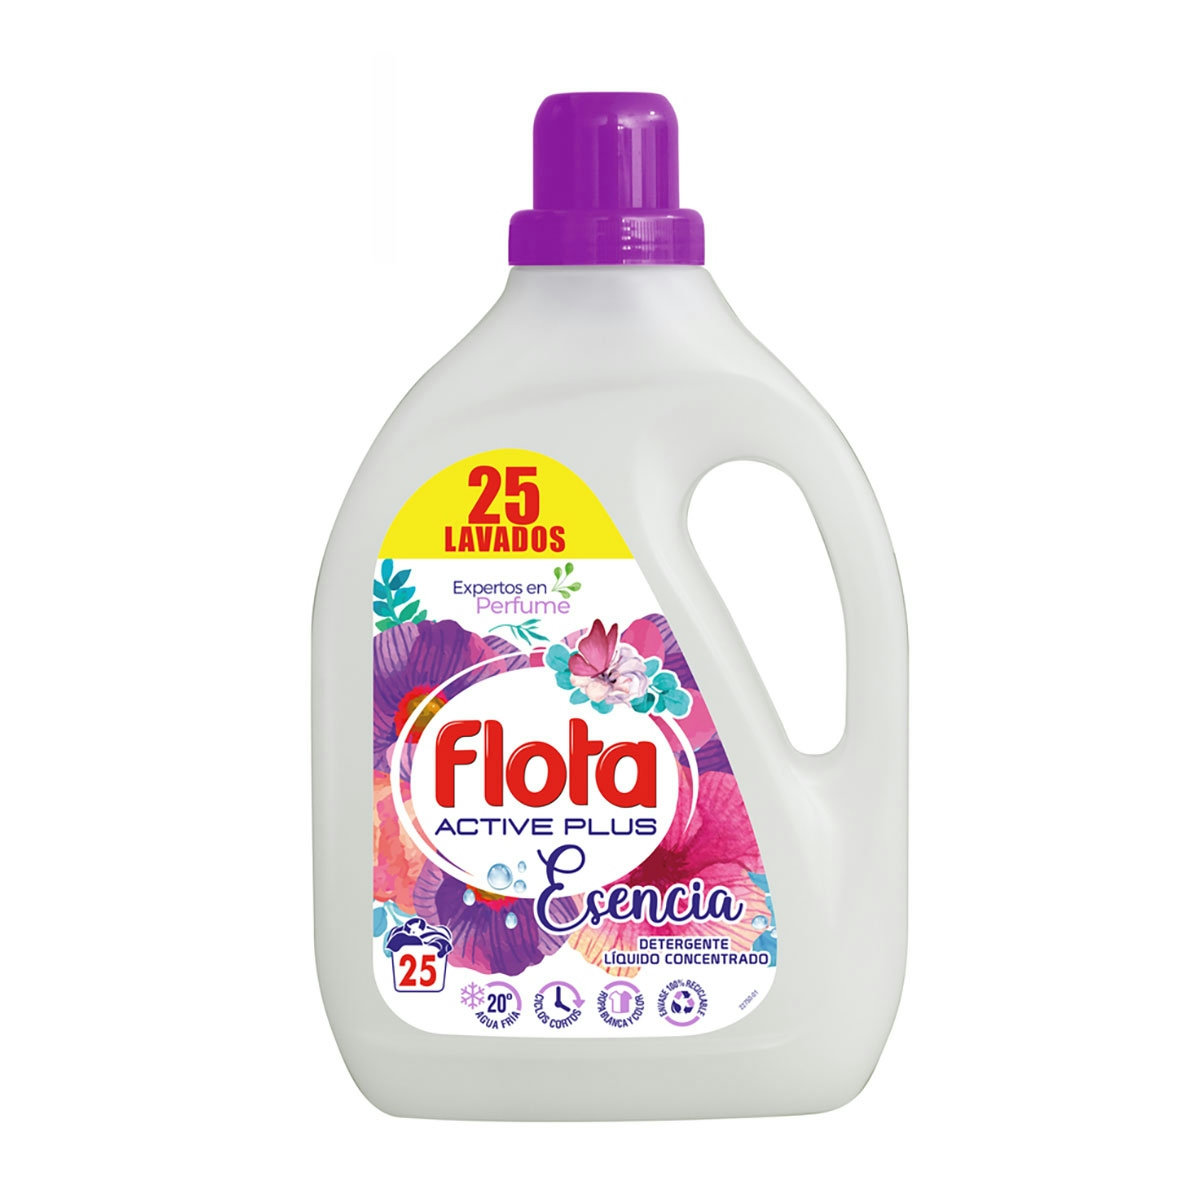 Detergente máquina FLOTA líquido active plus esencia soñar 25 lv